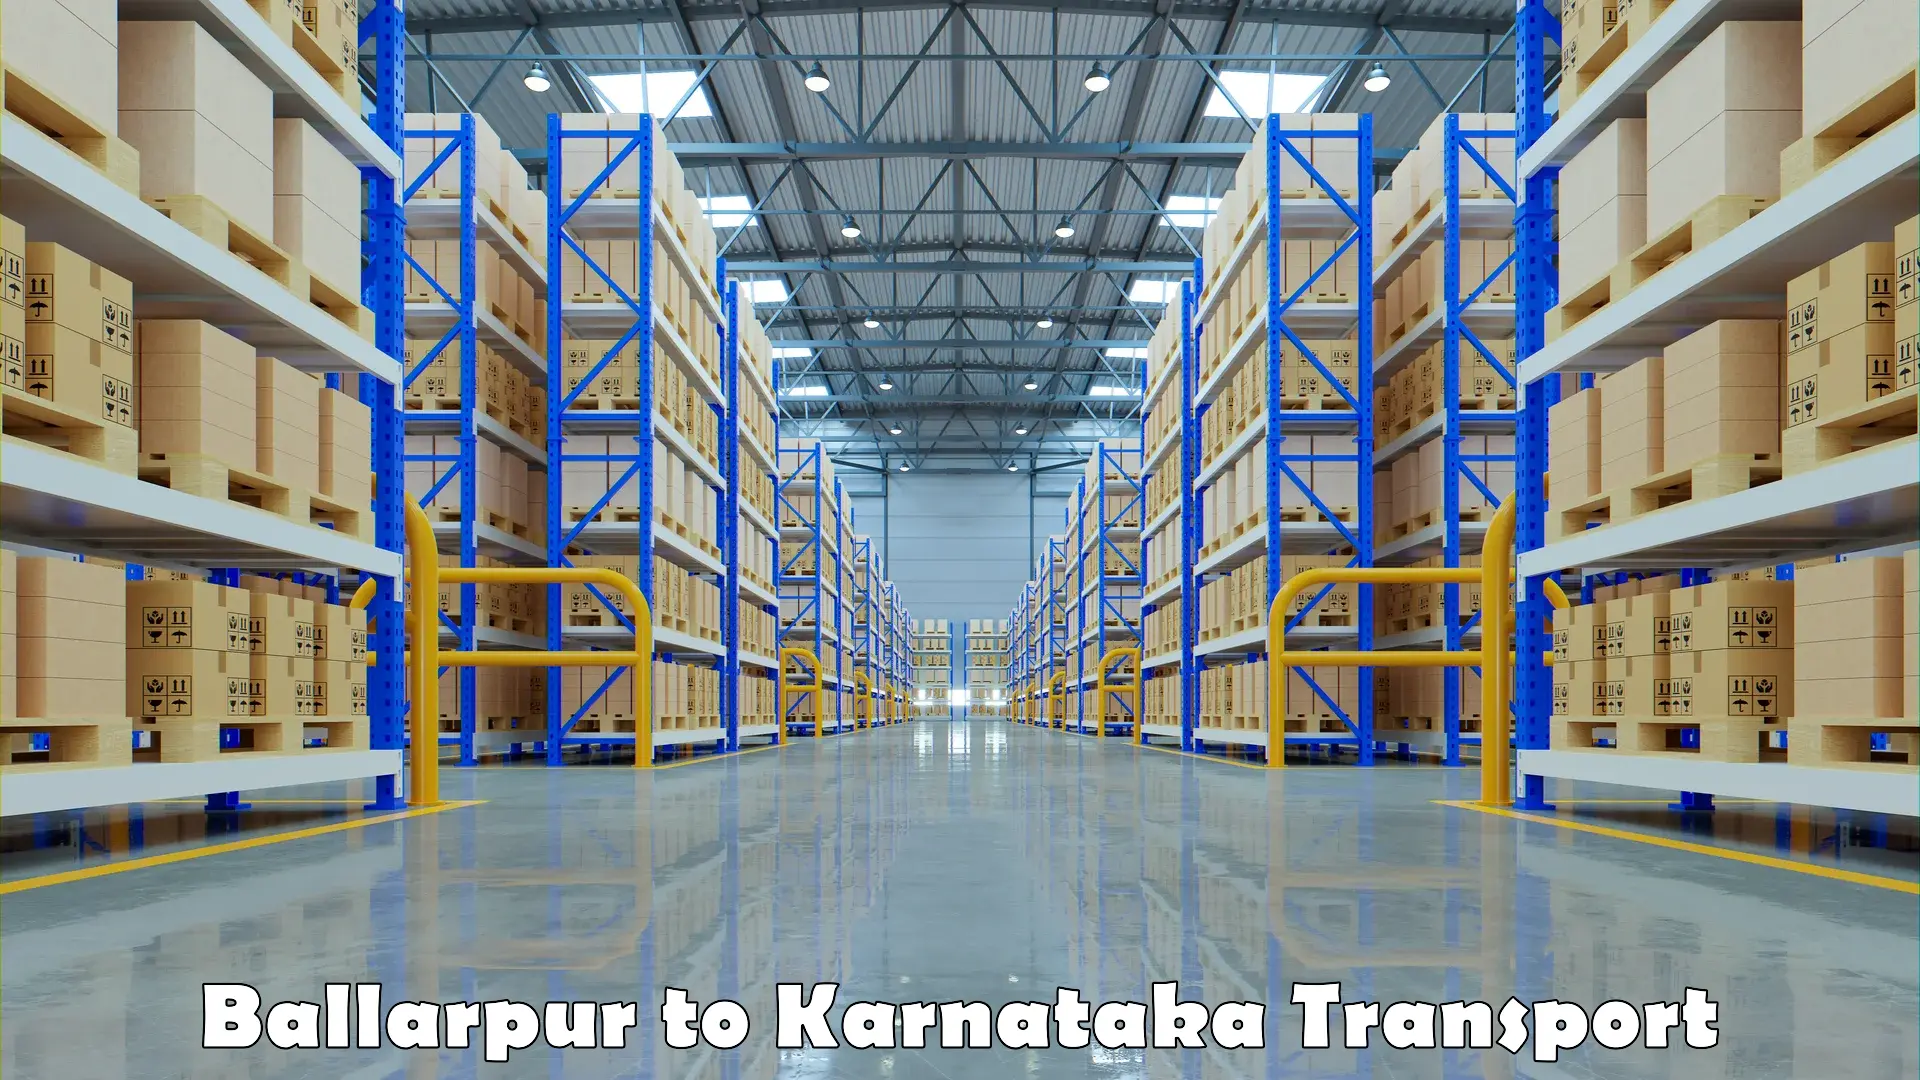 Daily transport service Ballarpur to Karnataka